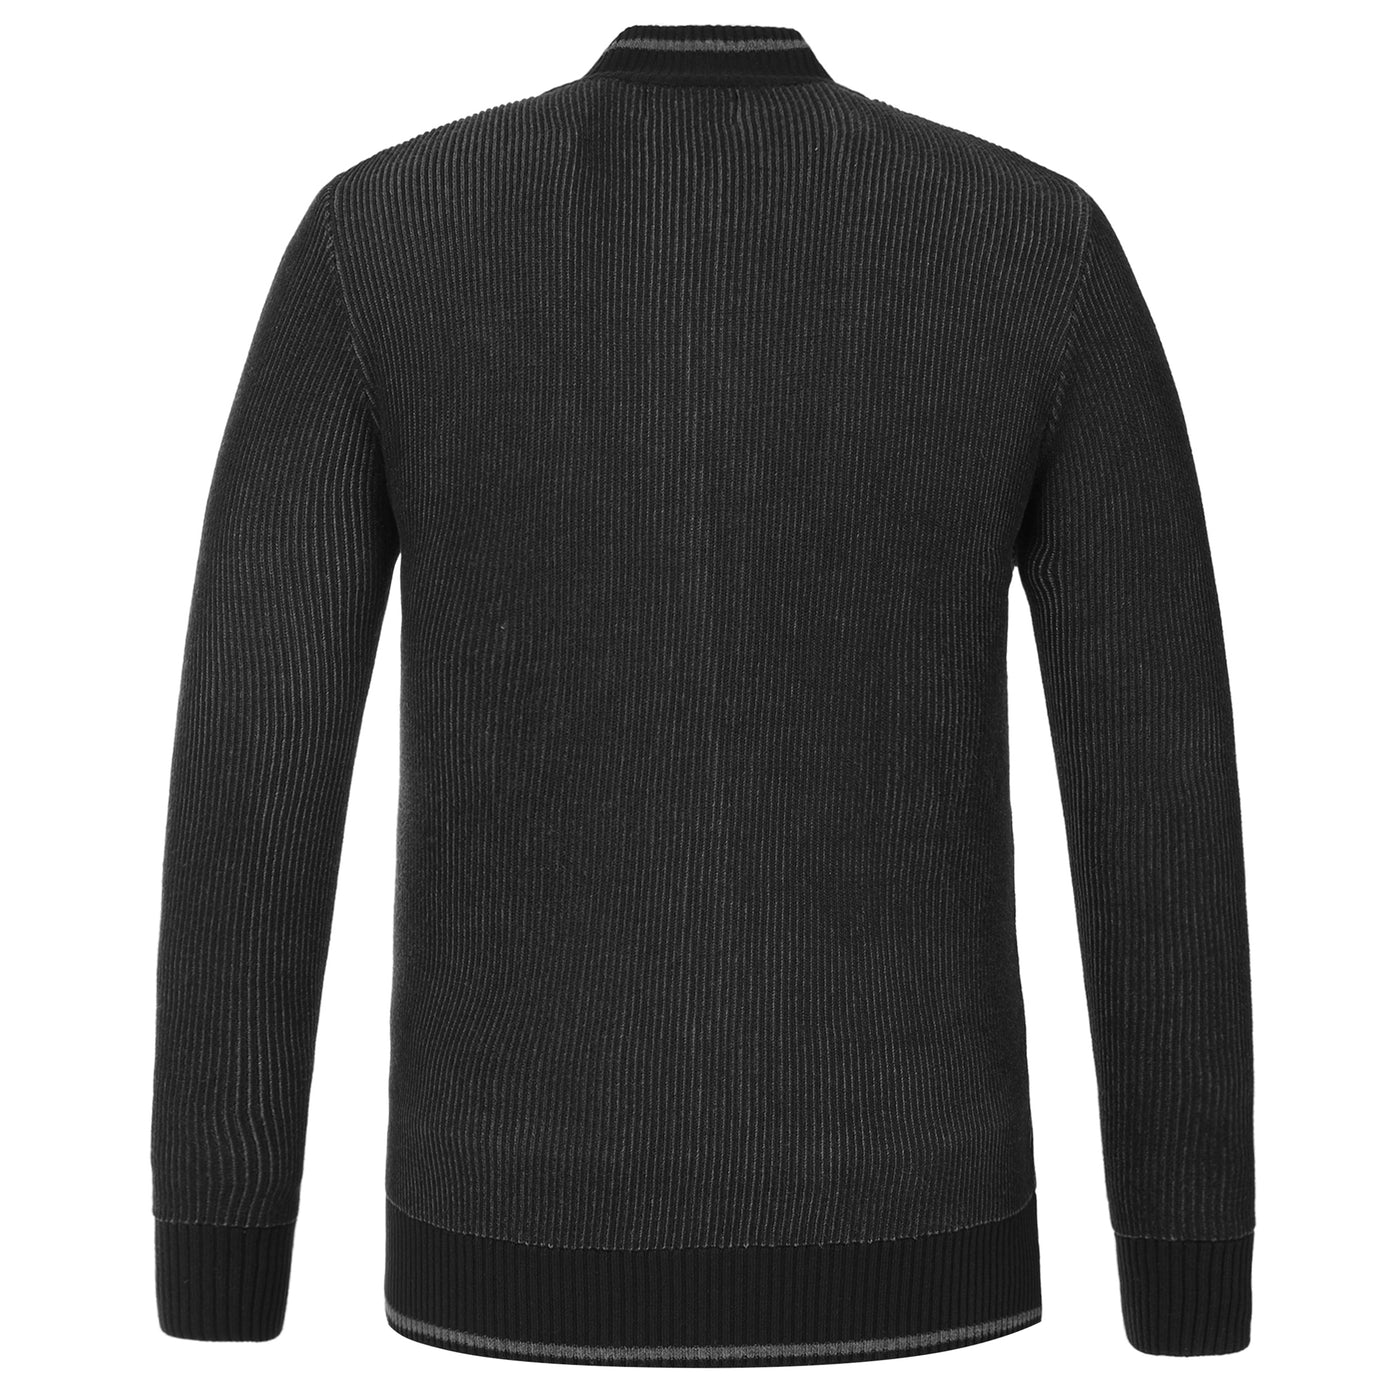 Black knitwear jacket